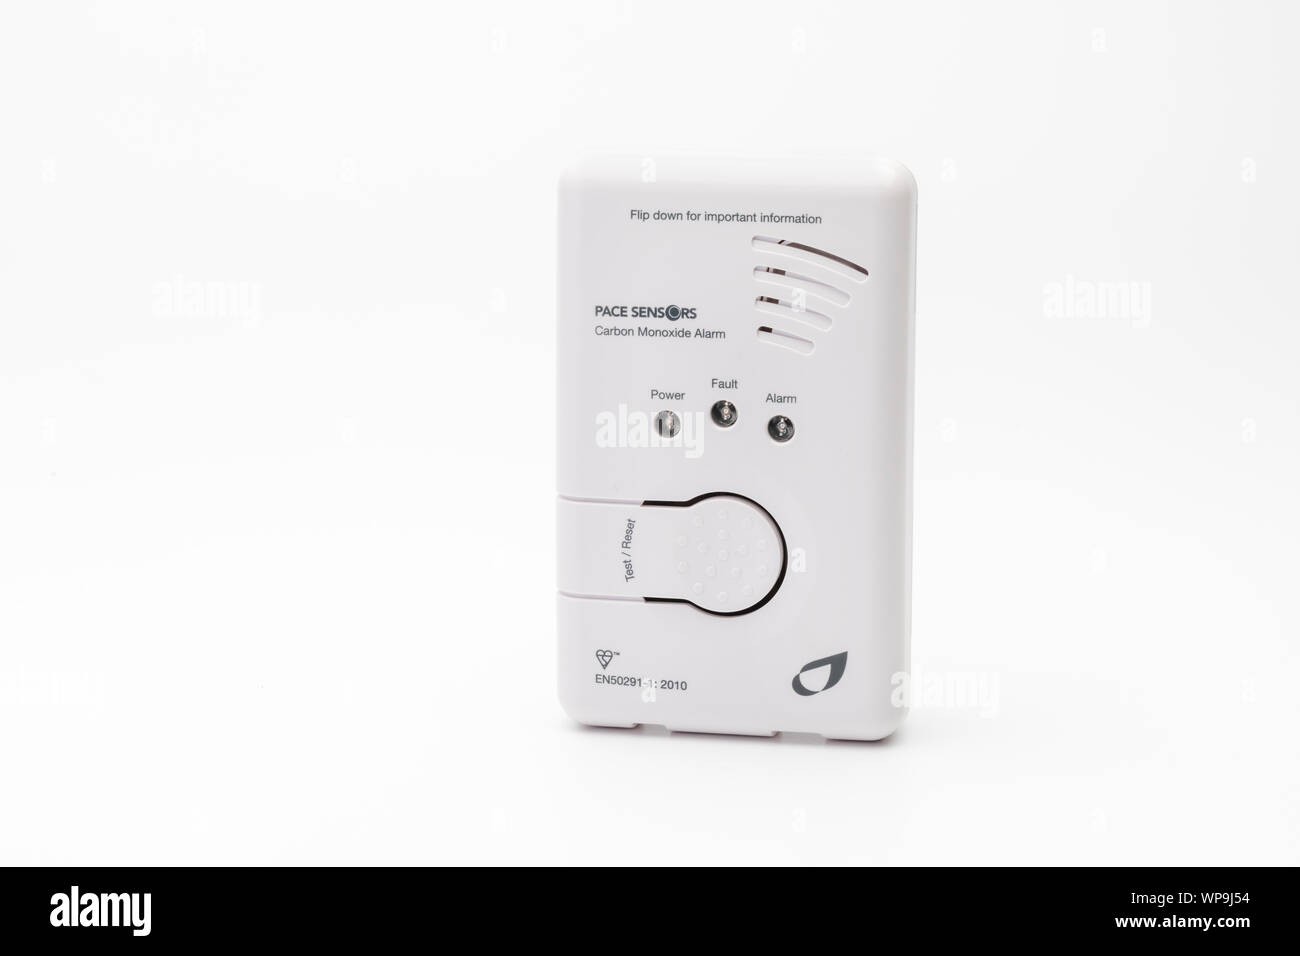 A Carbon Monoxide alarm Stock Photo